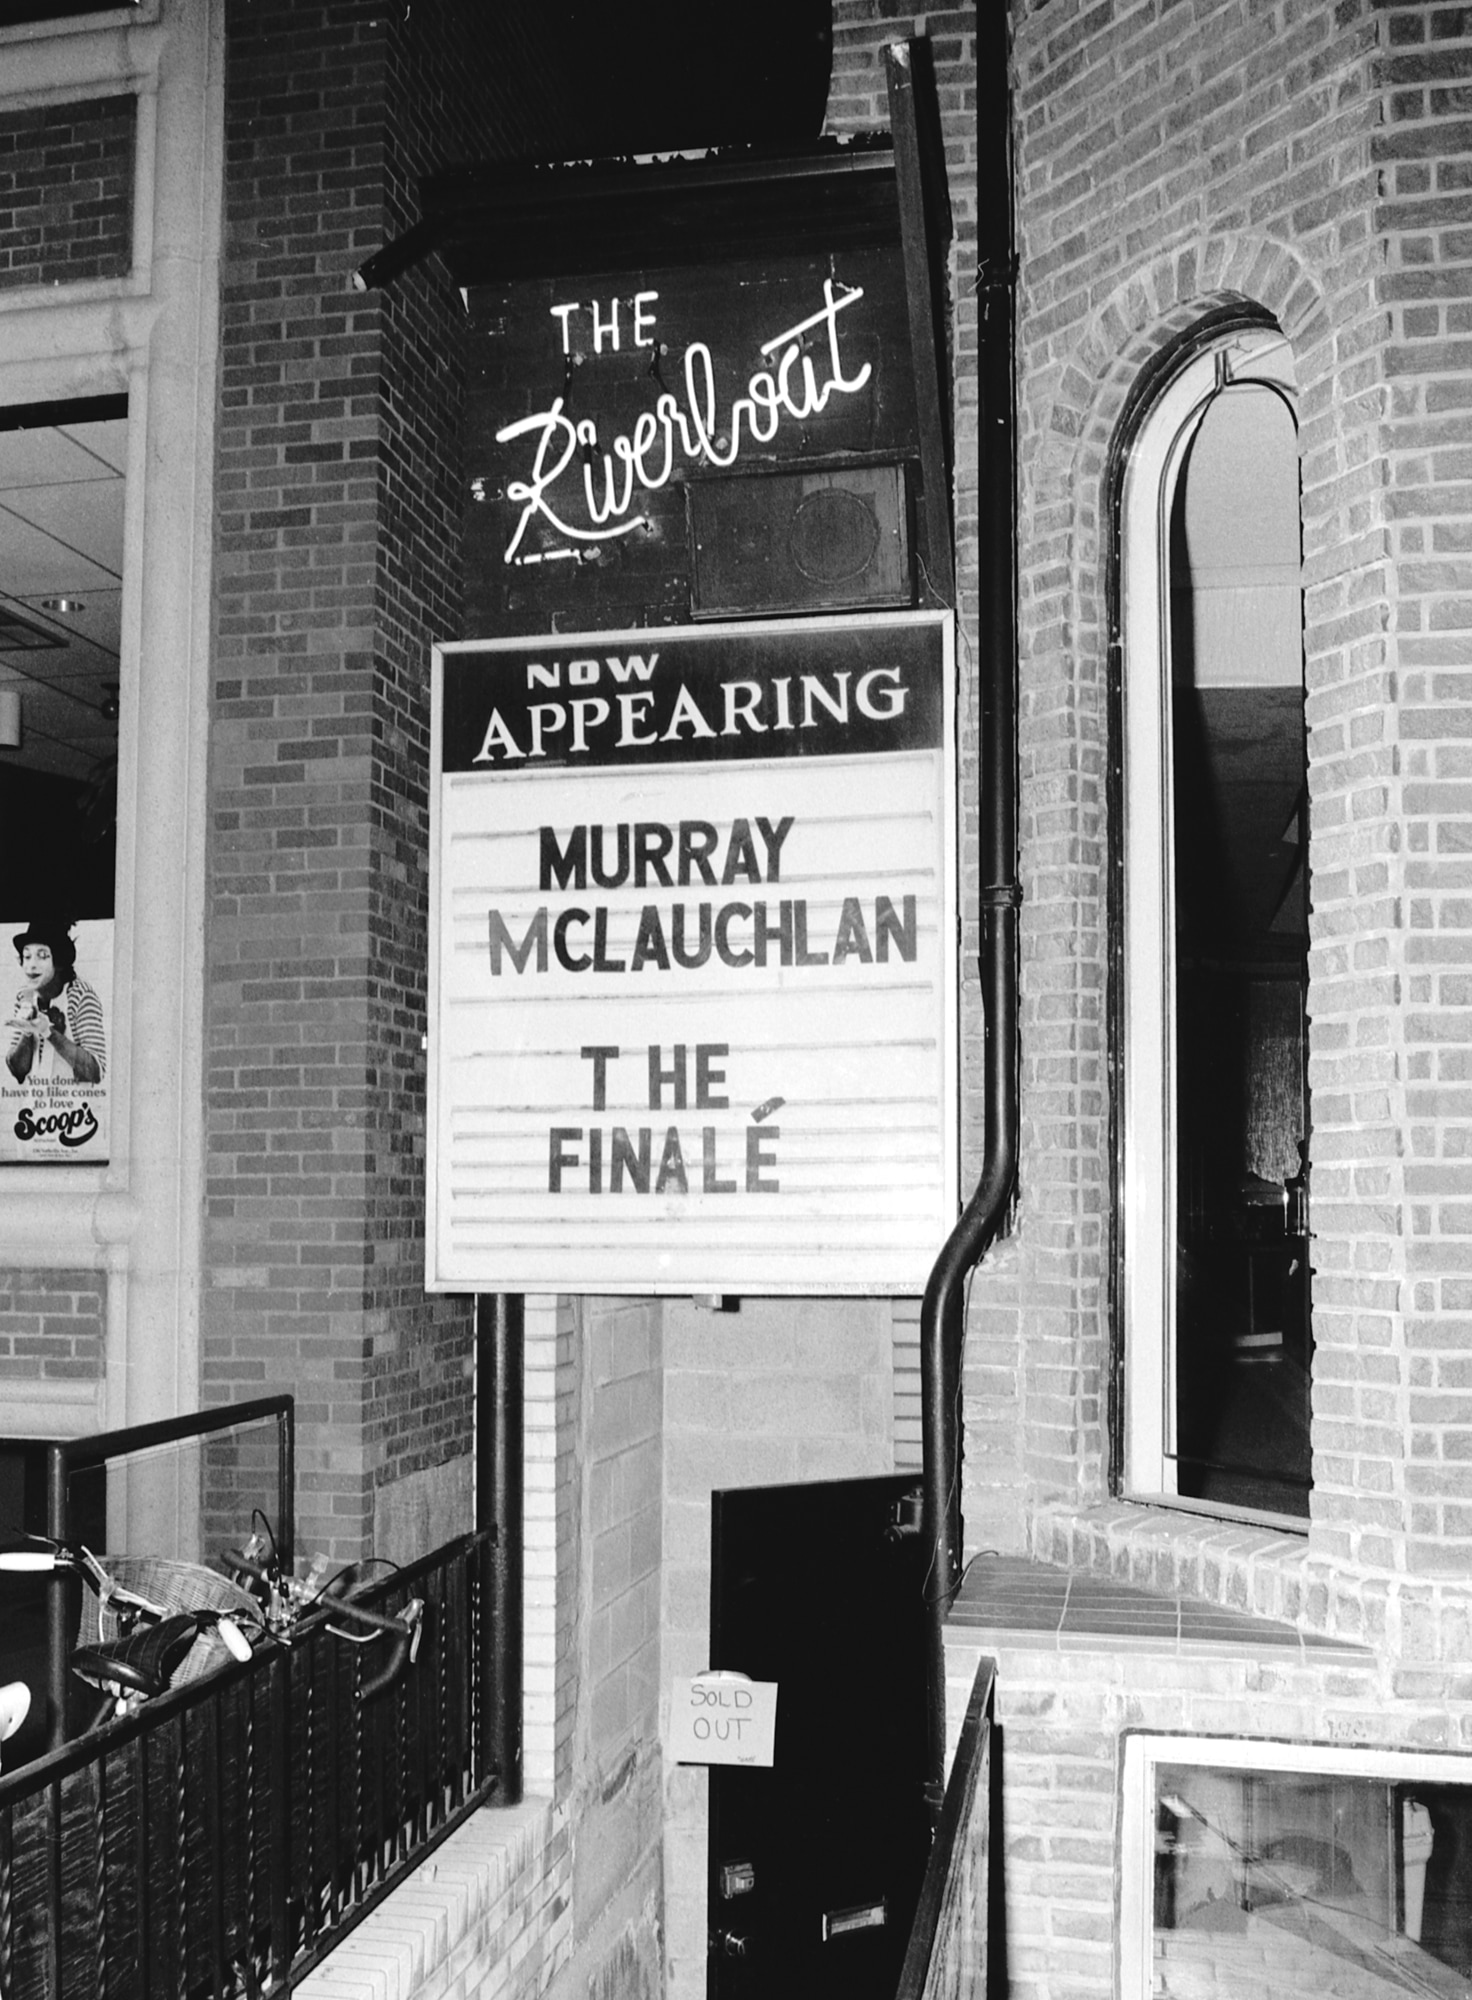  L’entrée extérieure du bâtiment en briques avec des escaliers qui descendent au niveau inférieur. Sur une pancarte, au-dessus de la porte, on peut lire « Riverboat. Now Appearing, Murray Maclaughlan, The Finale. » (Riverboat. En spectacle : Murray Maclaughlan, dernier spectacle).